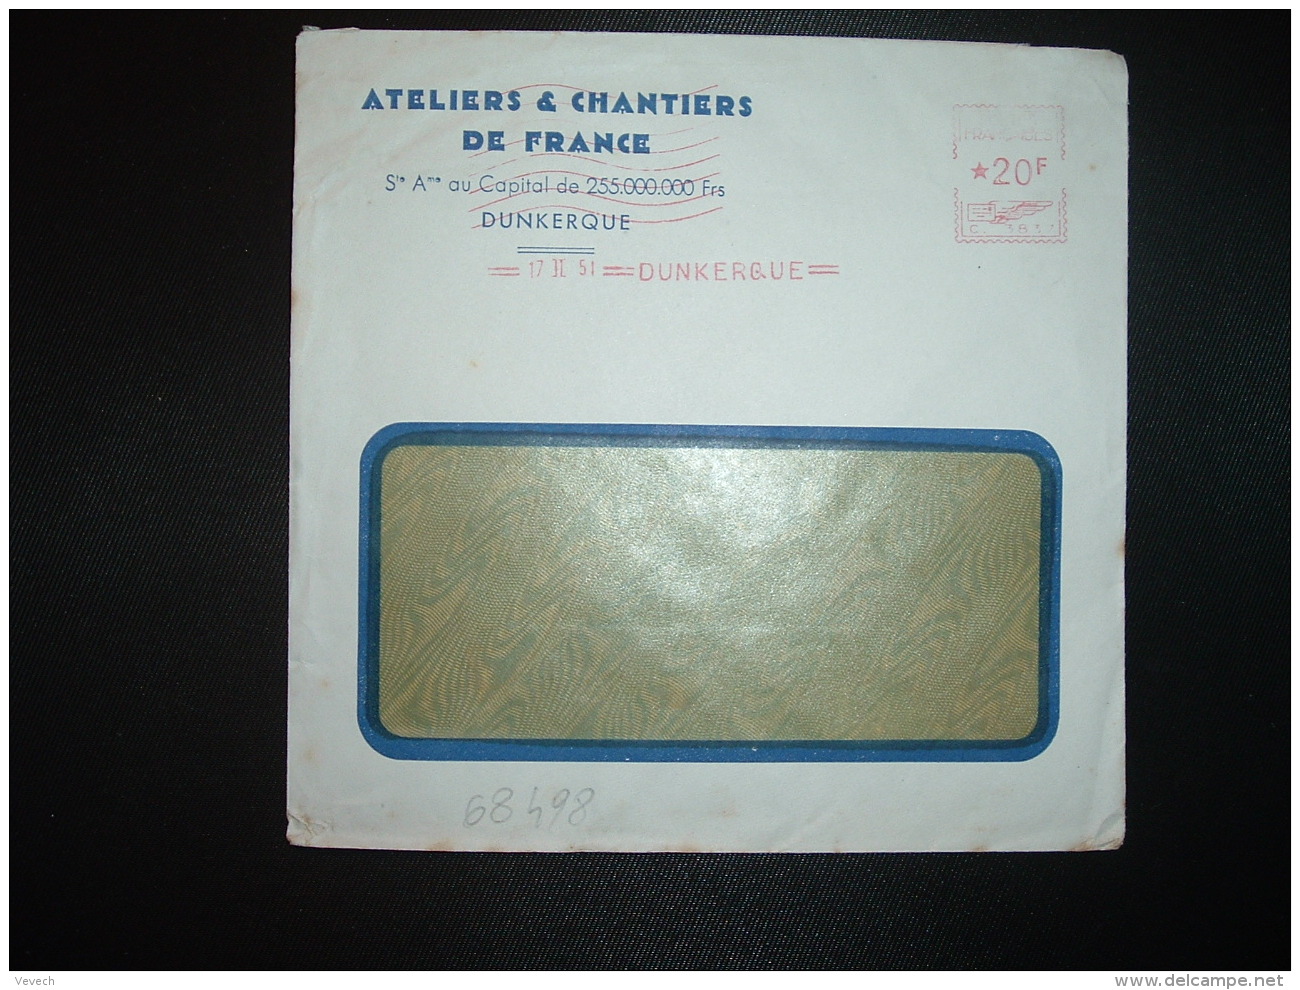 LETTRE EMA C. 3837 à 20F Du 17 II 51 DUNKERQUE (59) ATELIERS &amp; CHANTIERS DE FRANCE - ....-1700: Précurseurs